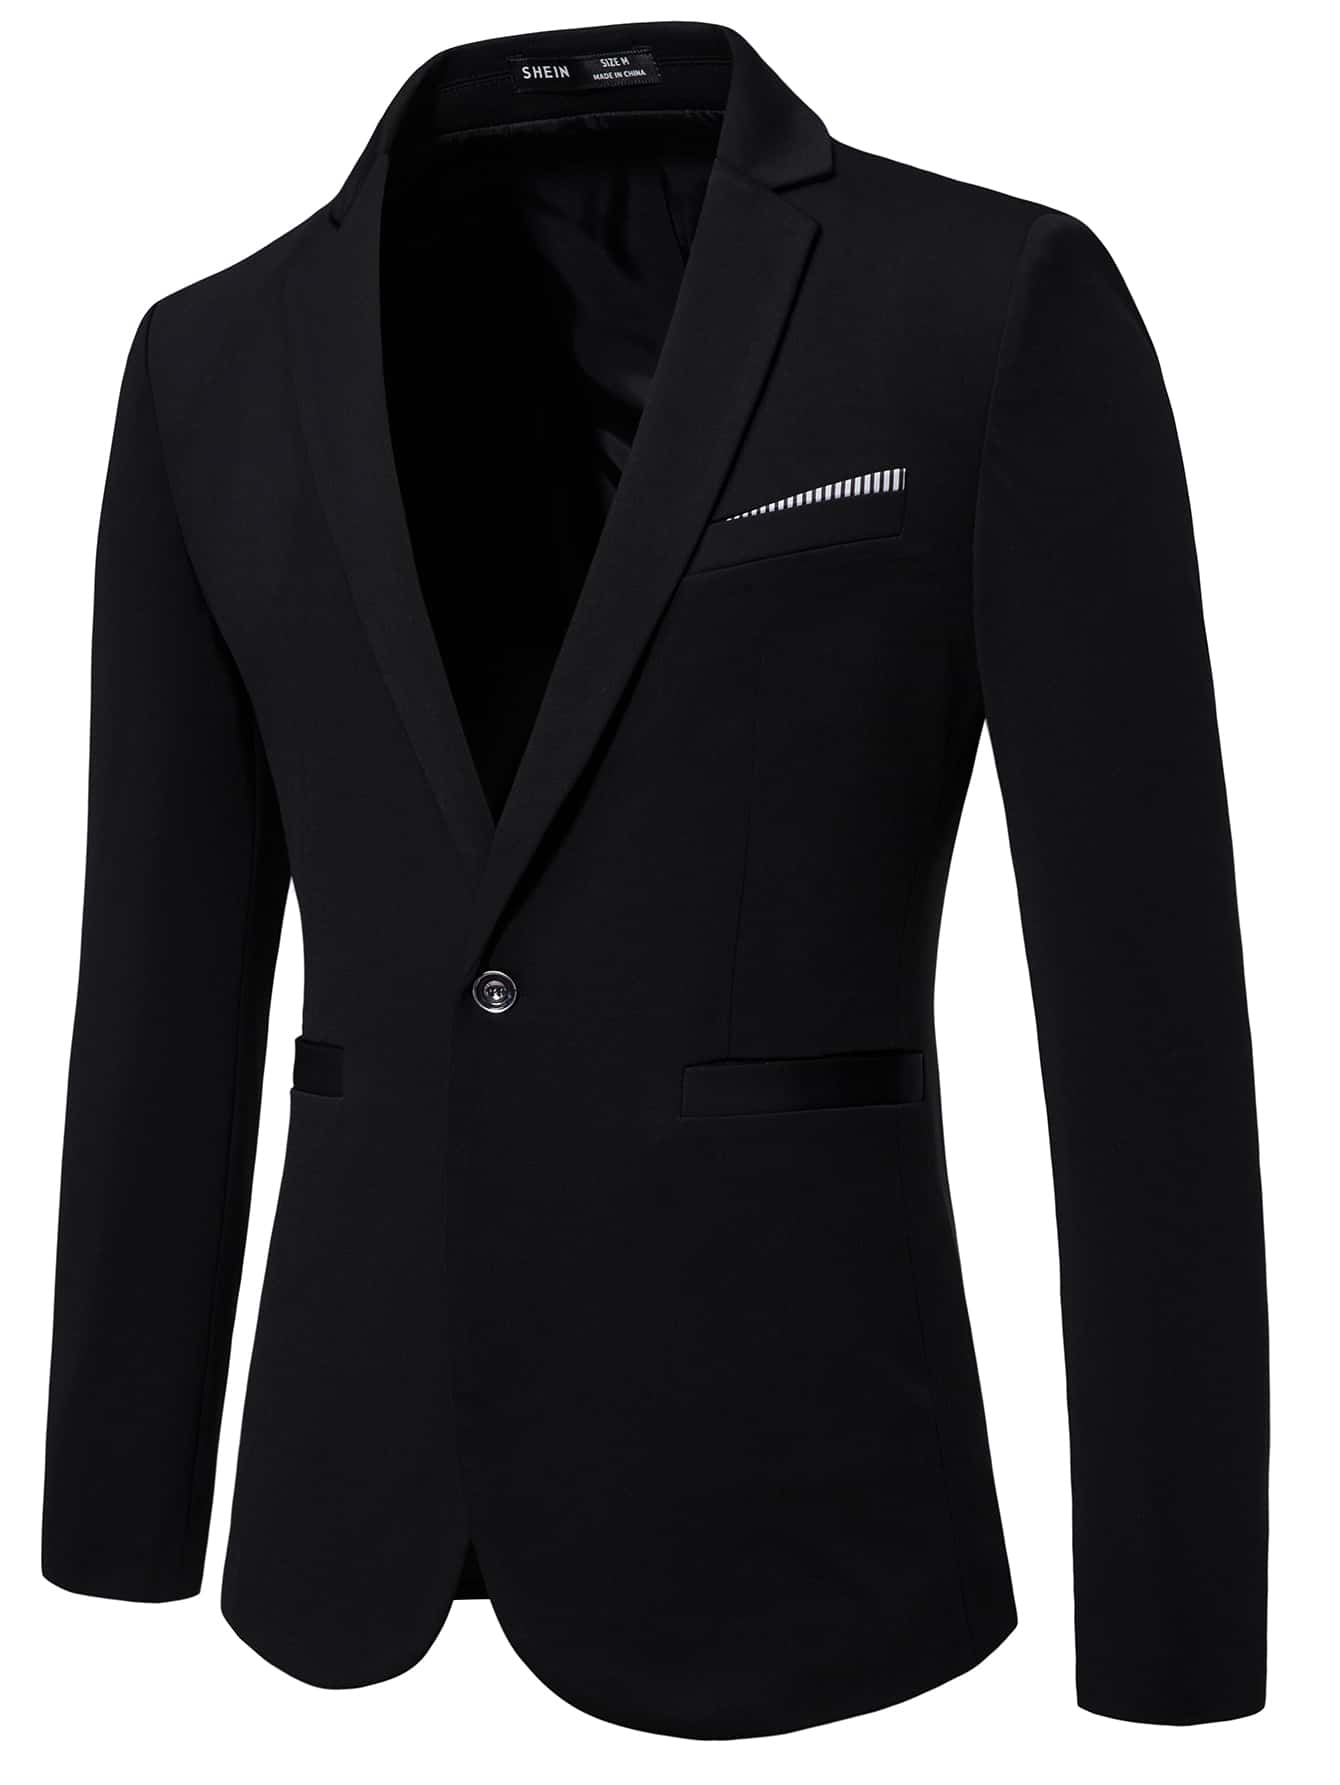 Мужской пиджак с длинными рукавами и зубчатыми лацканами Manfinity Mode, черный мужской однотонный костюм с воротником стойкой manfinity mode черный